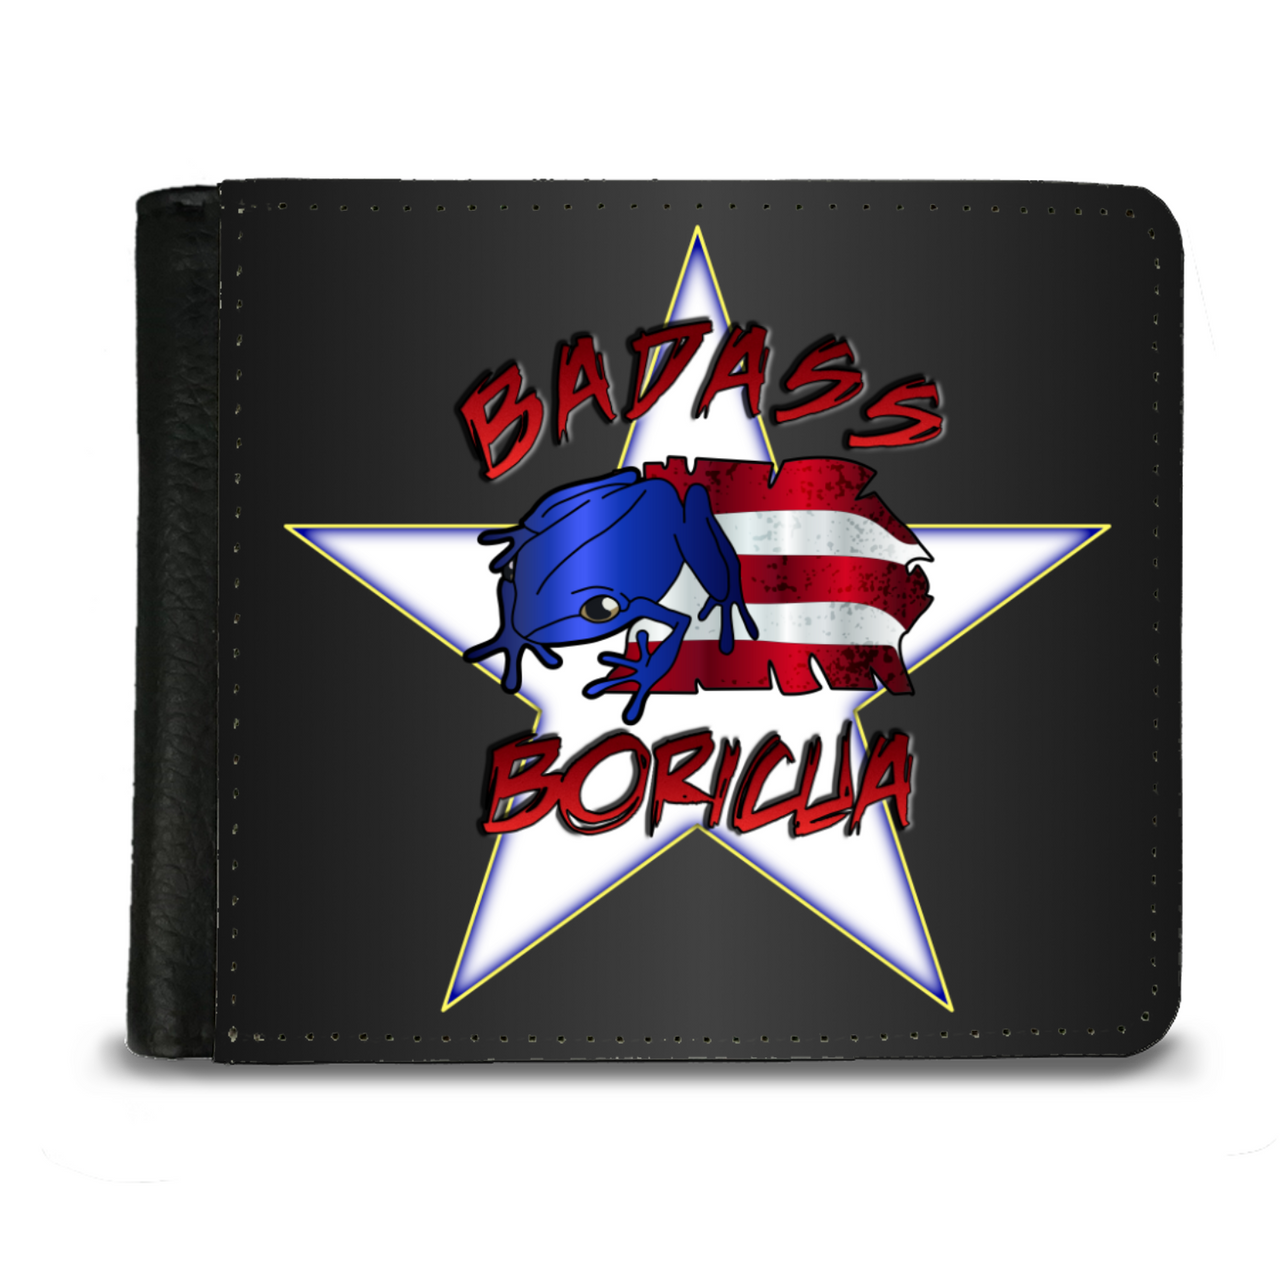 Badass Boricua Men's (or woman's) Wallet